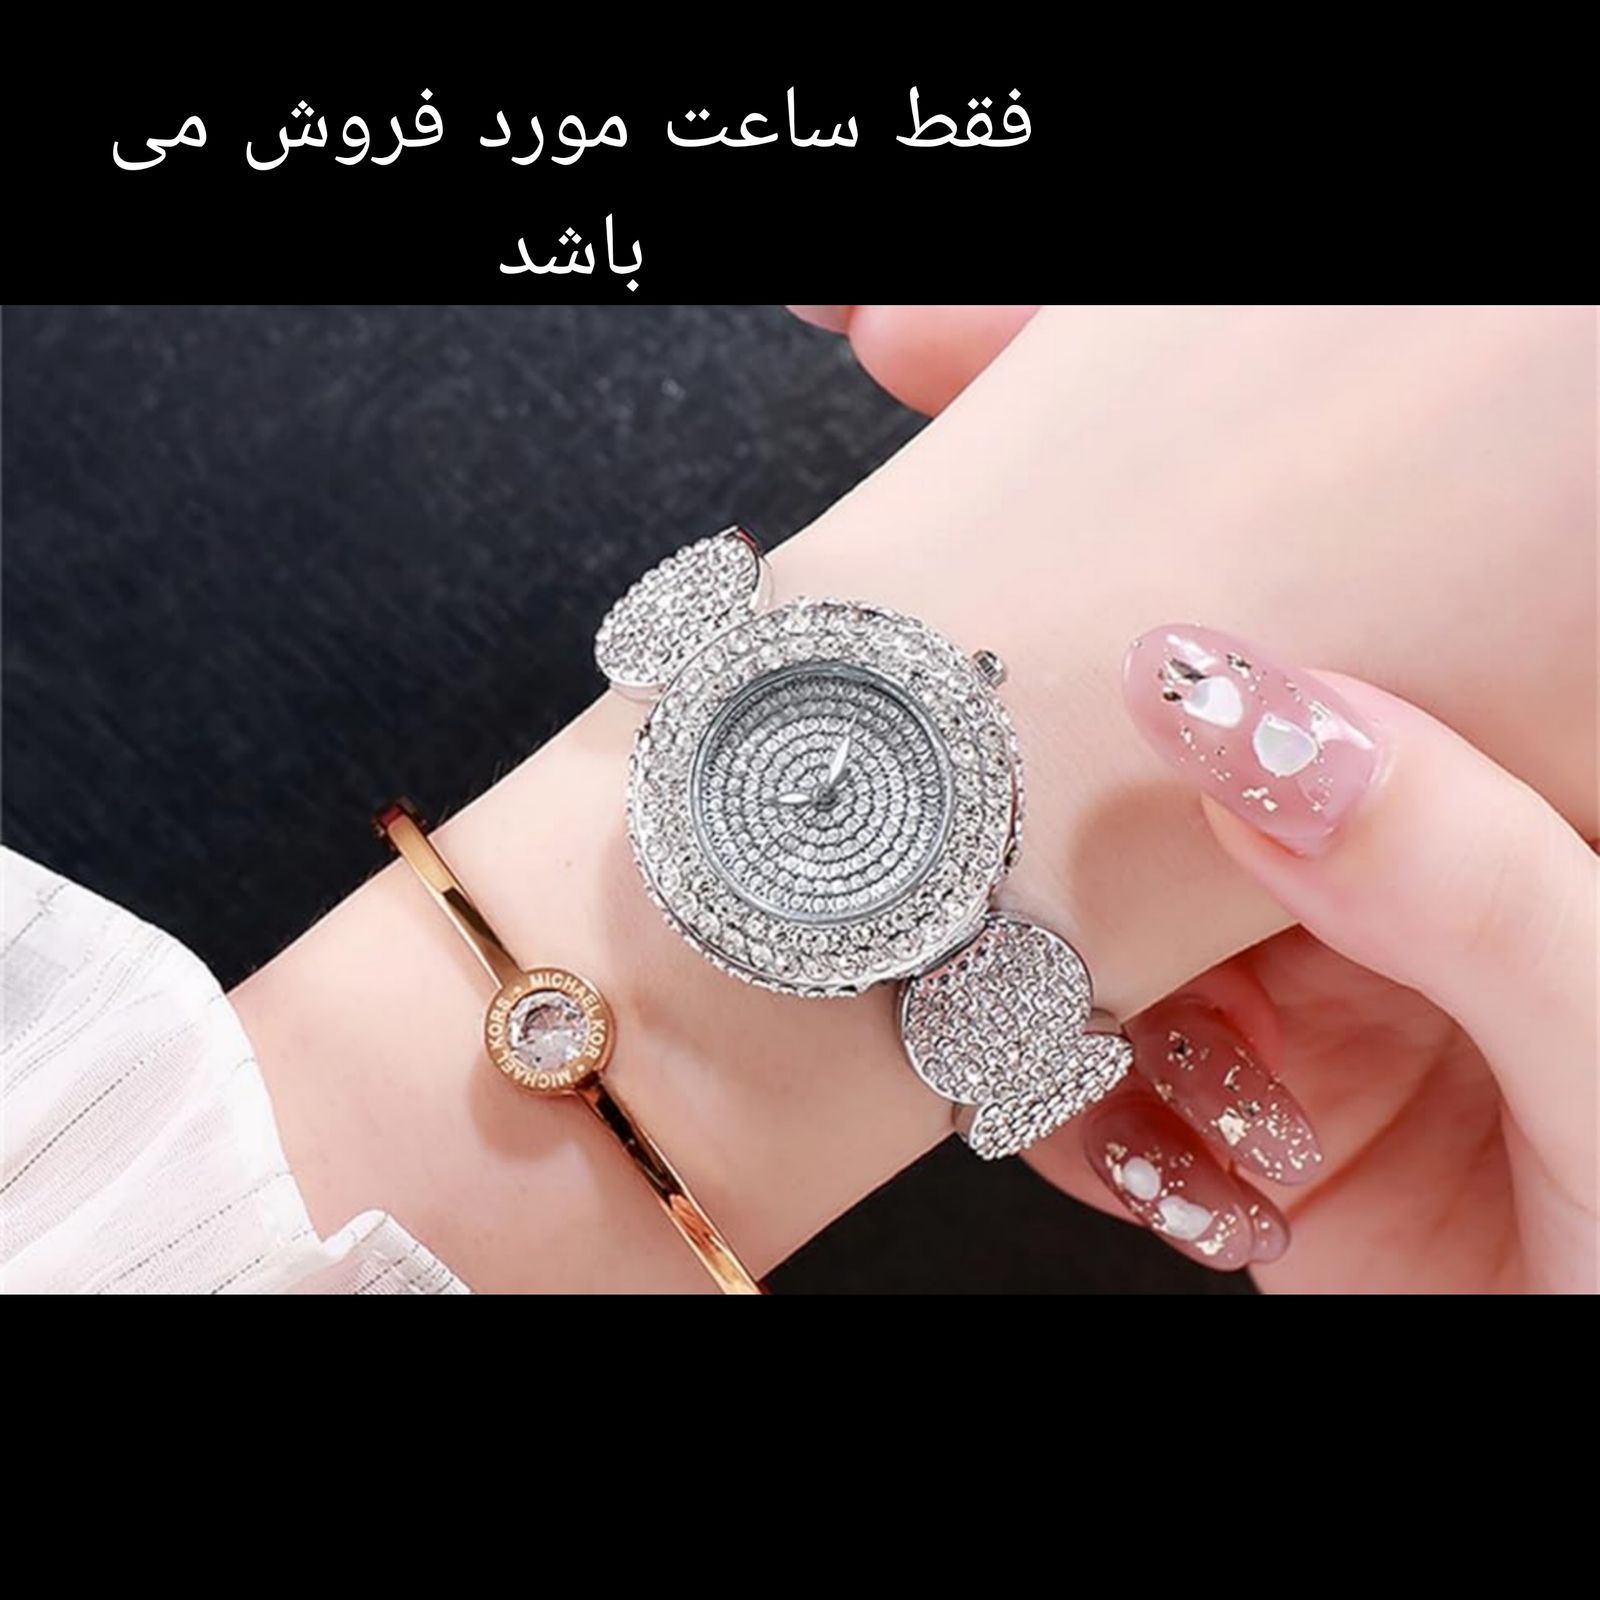 ساعت مچی عقربه ای زنانه مدل دستبندی فول نگین استون طرح جواهر -  - 3